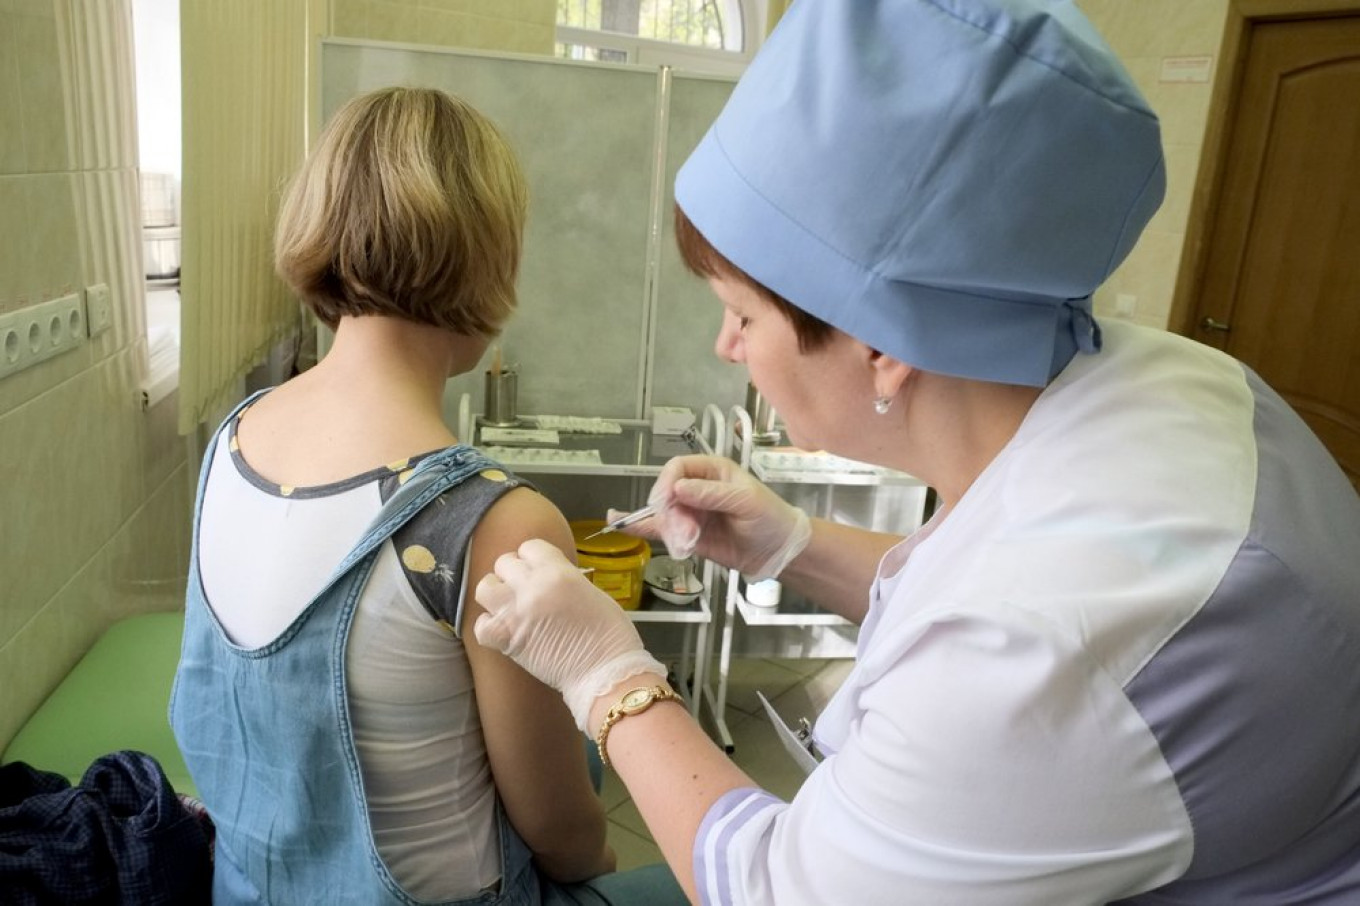 1 in 2 Russian Doctors Distrust New Coronavirus Vaccine – Poll